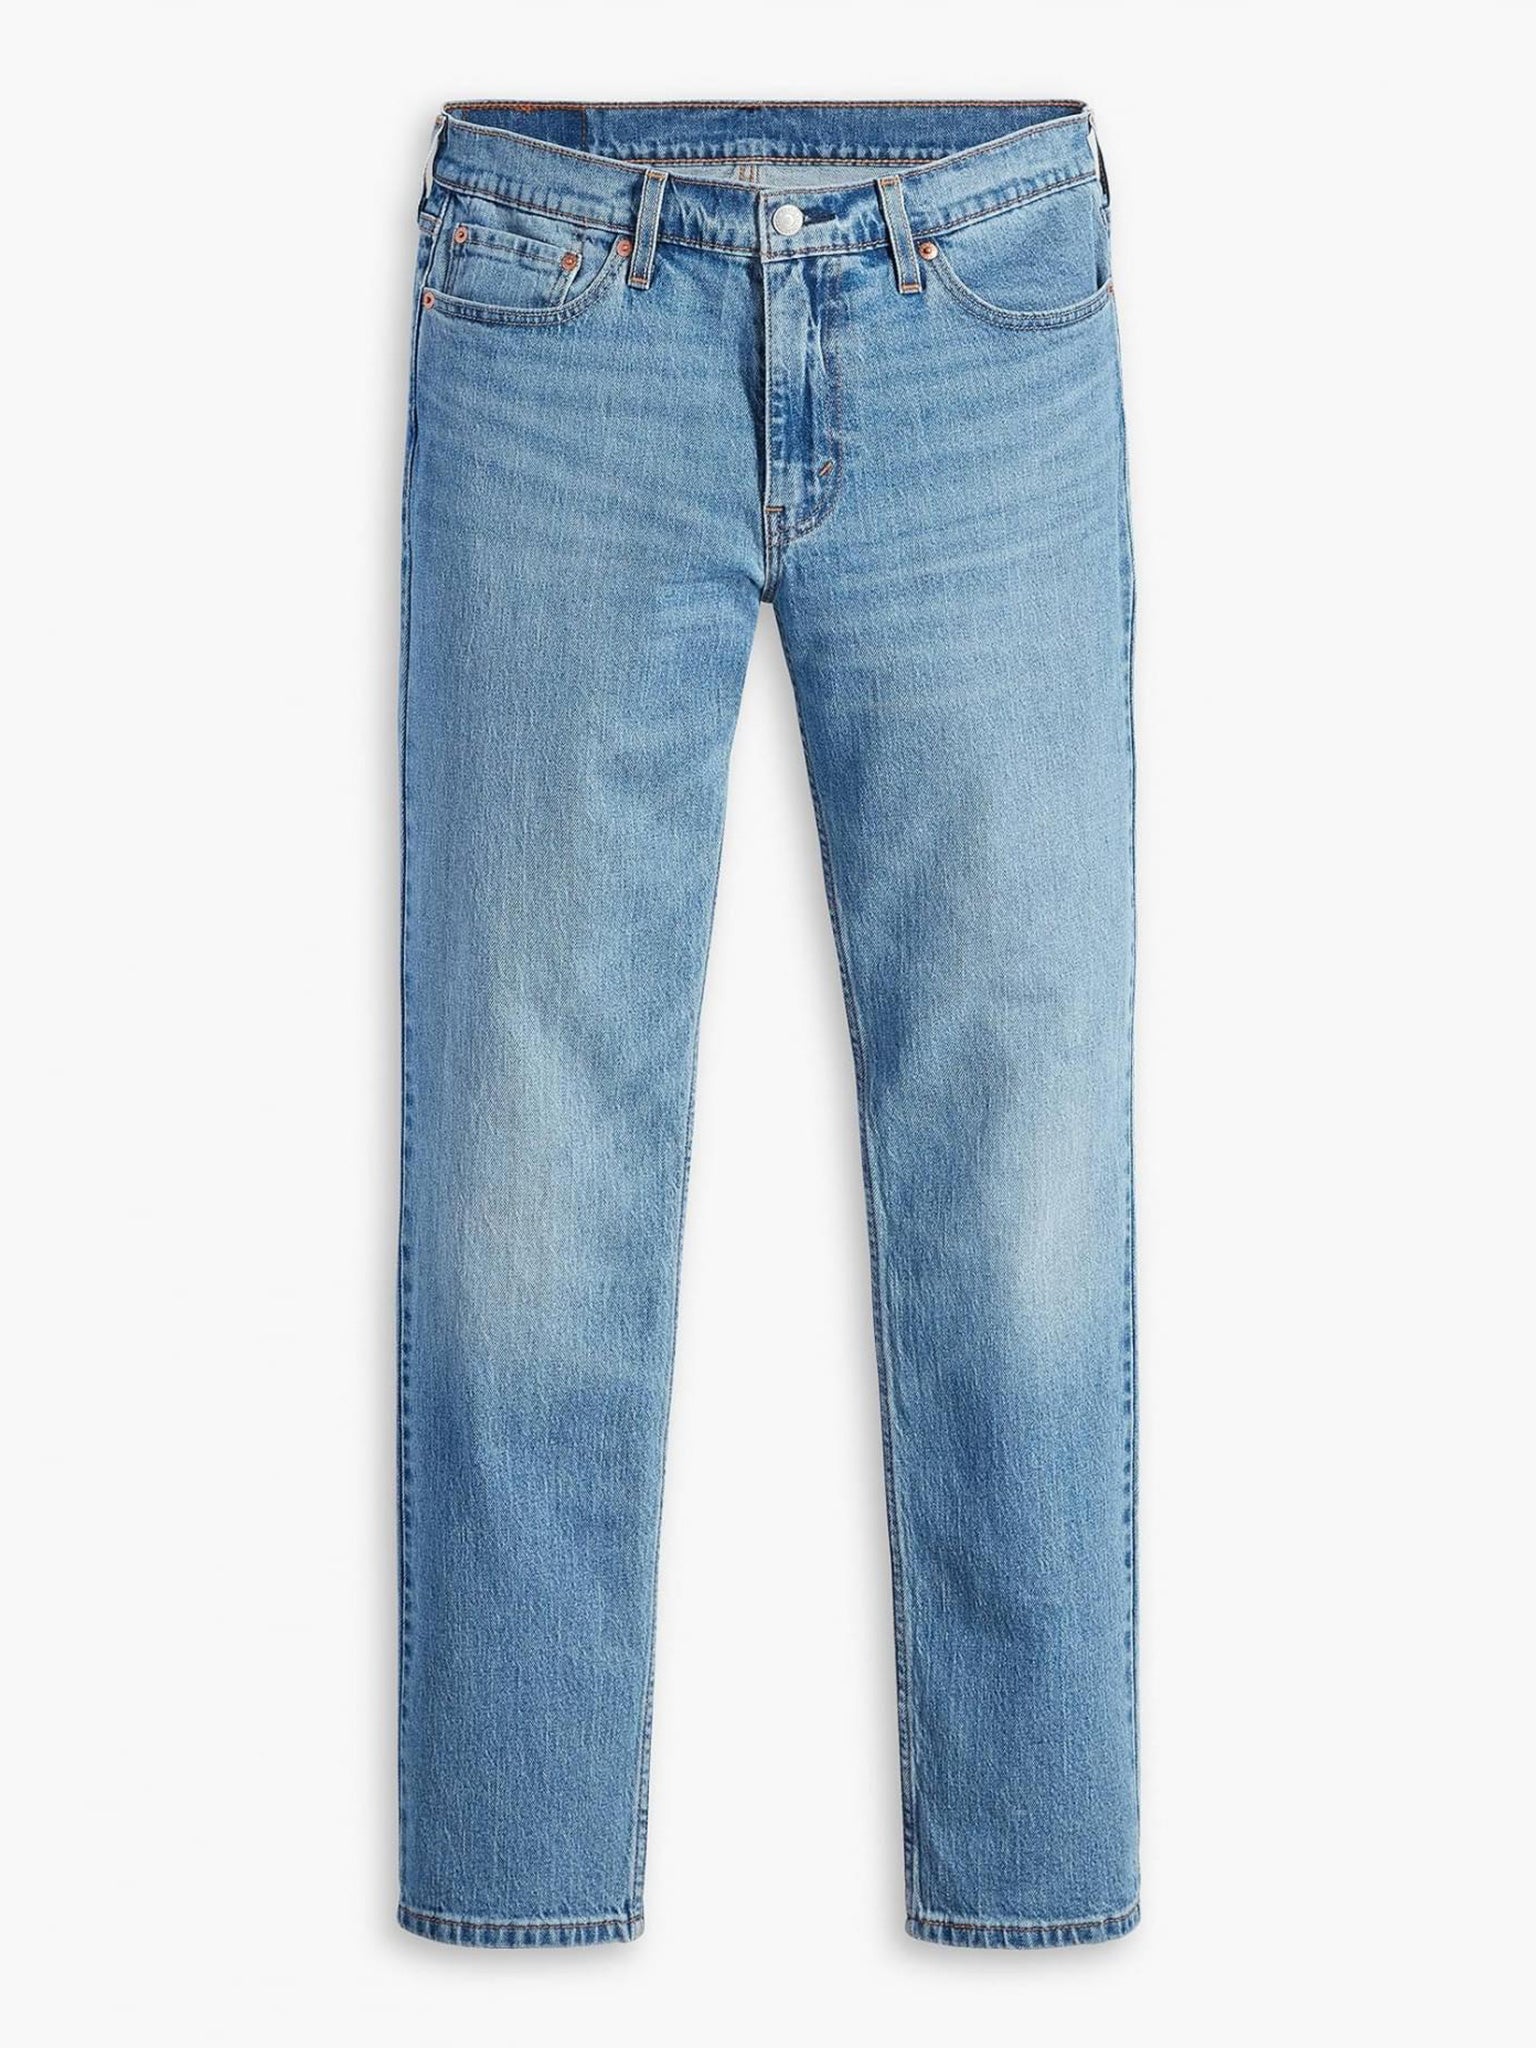 Ανδρικό παντελόνι τζιν 511™ slim fit men's jeans 045115652 | 045115652